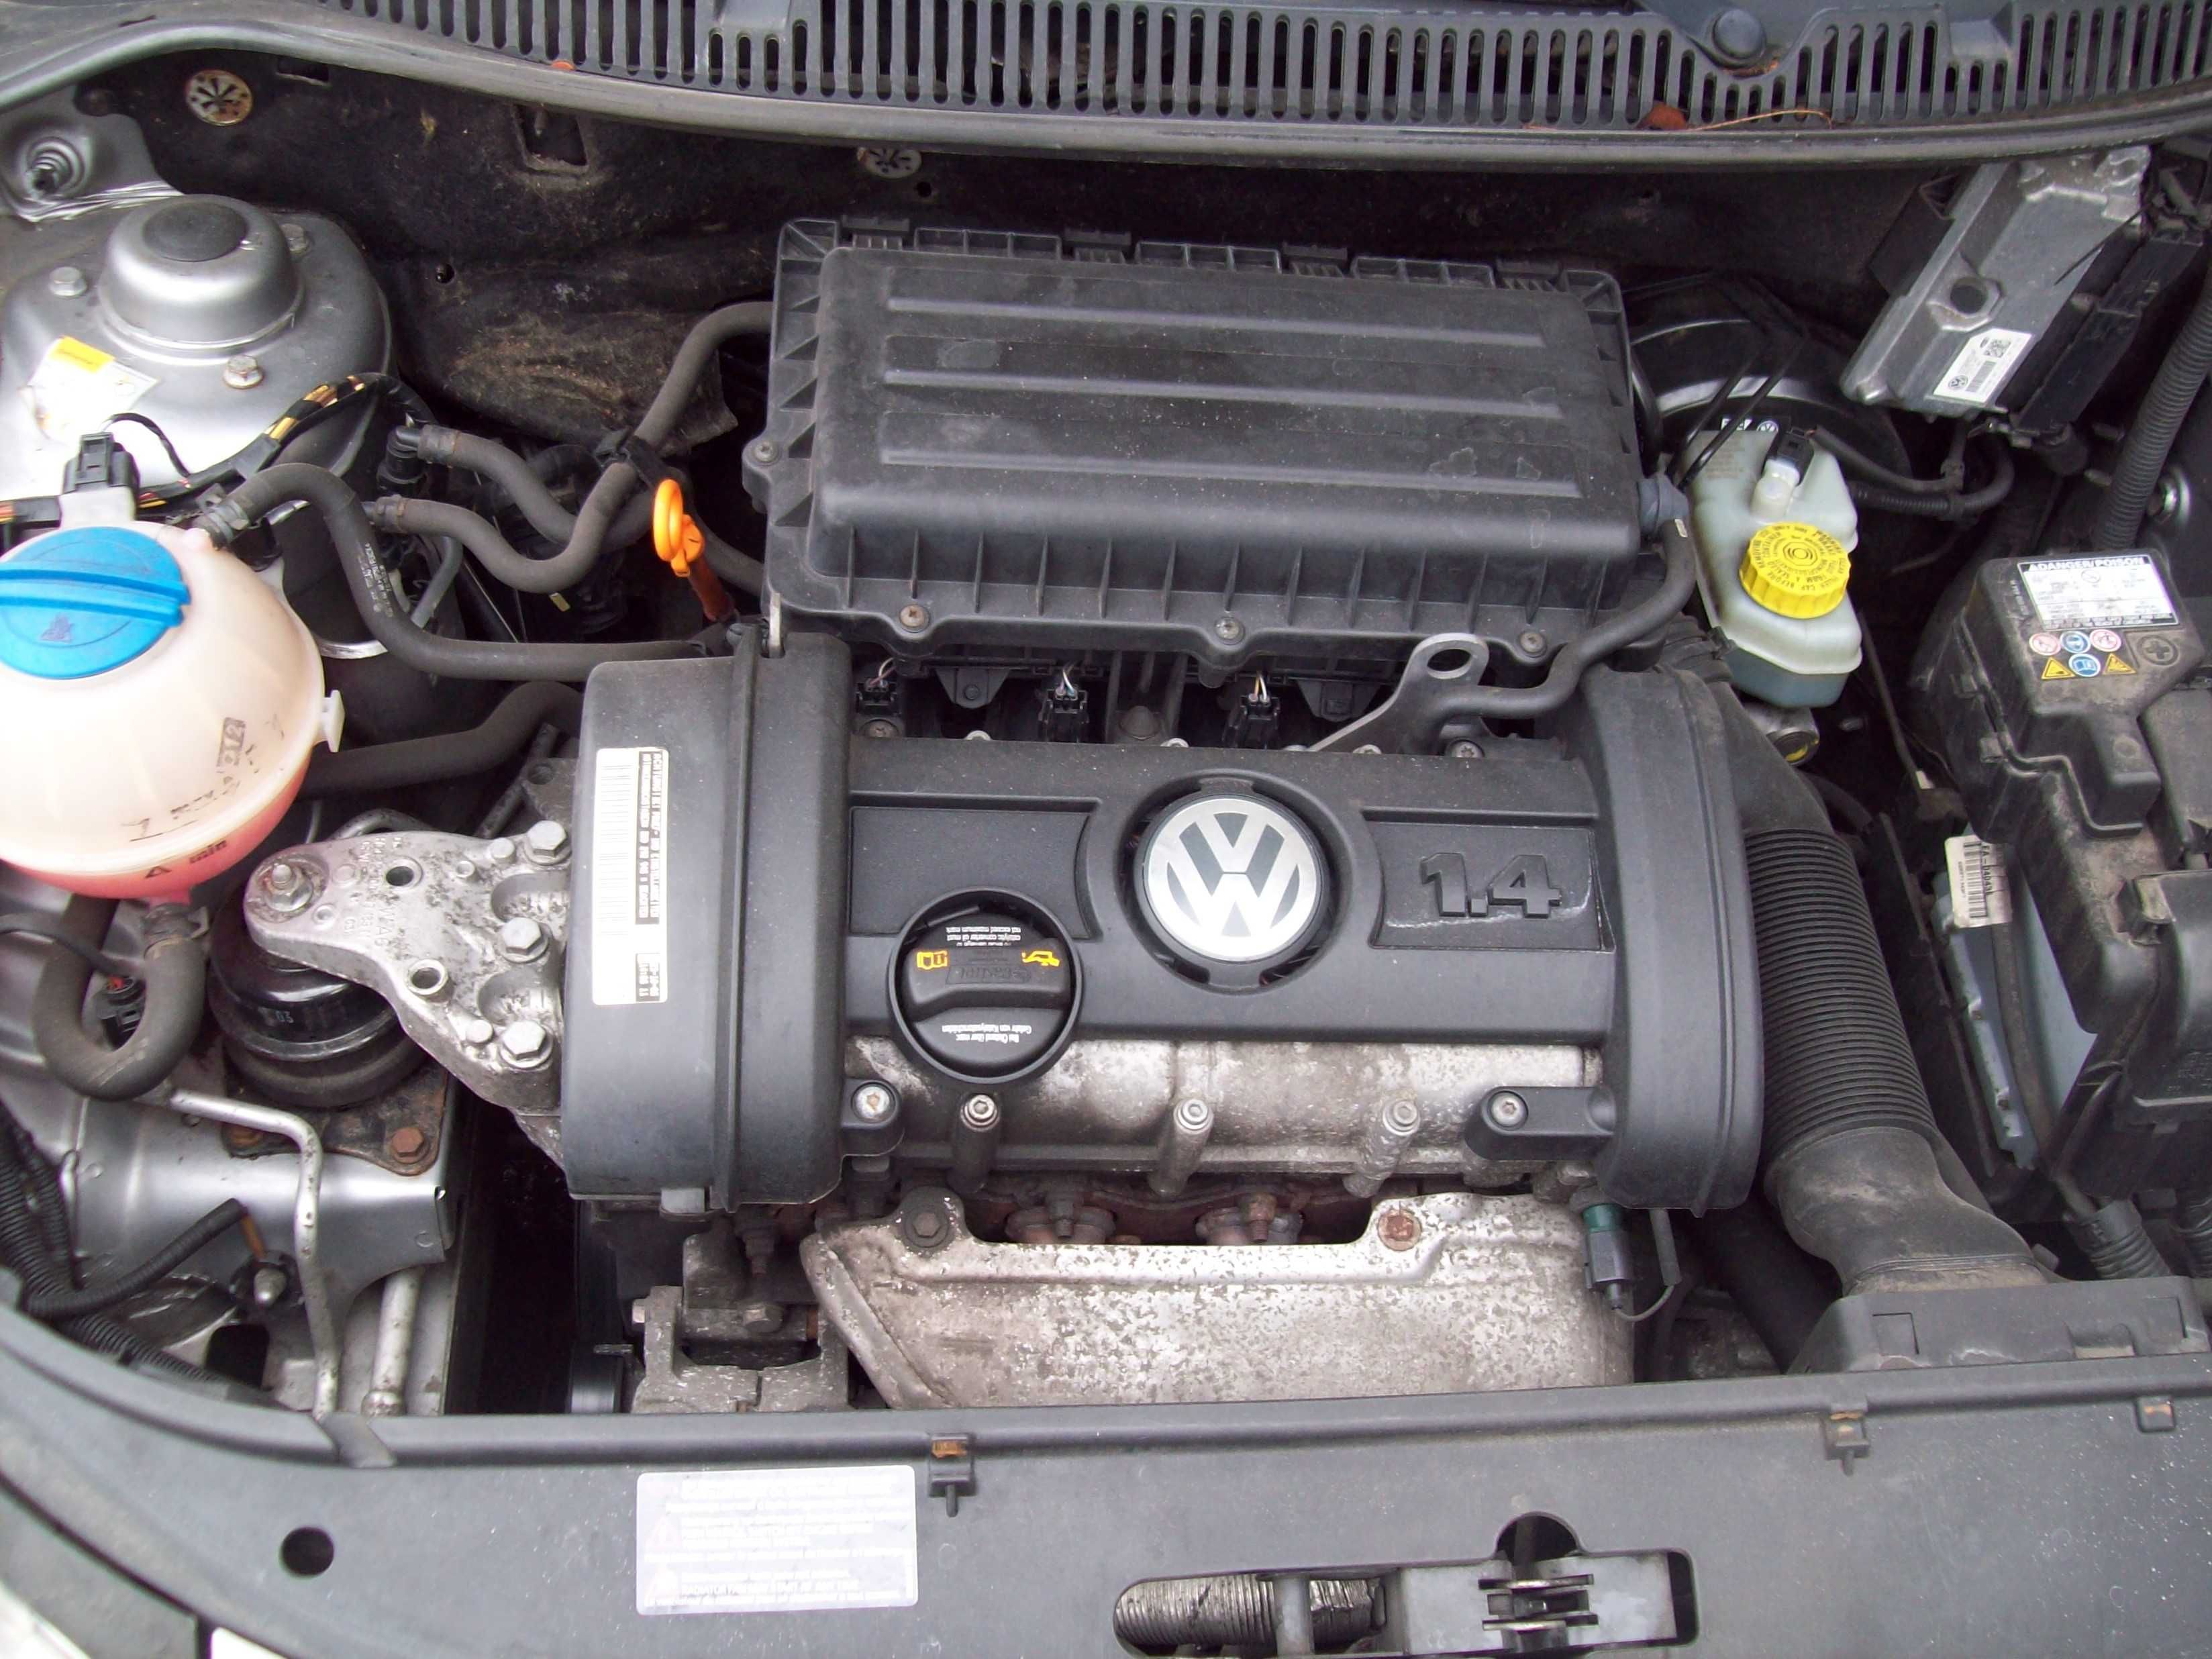 VW POLO 1,4 MPI/5 drzwi/stan idealny bez korozji/klimatyzacja